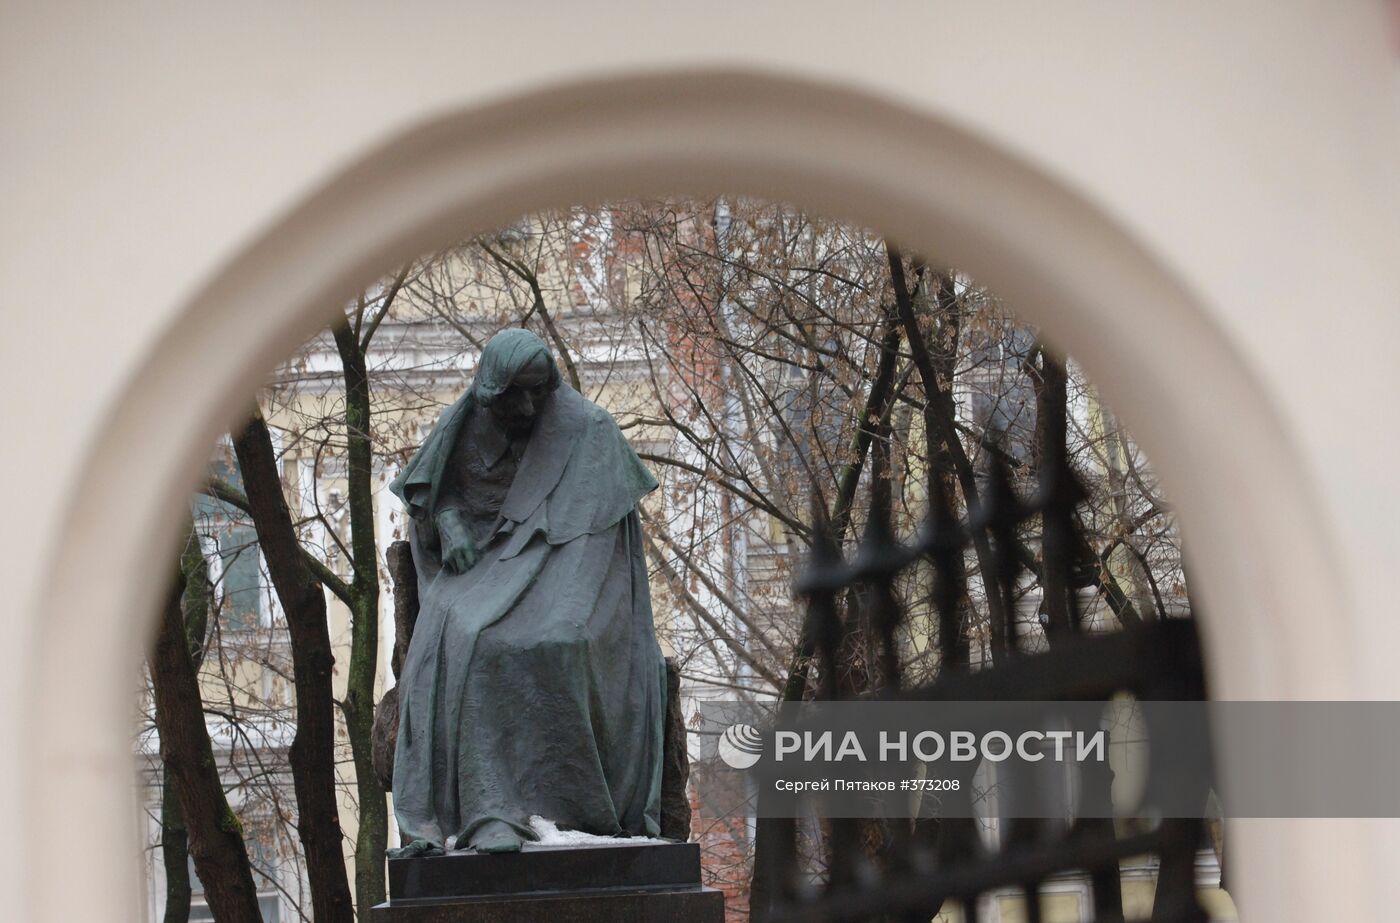 Памятник великому русскому писателю Николаю Гоголю в Москве